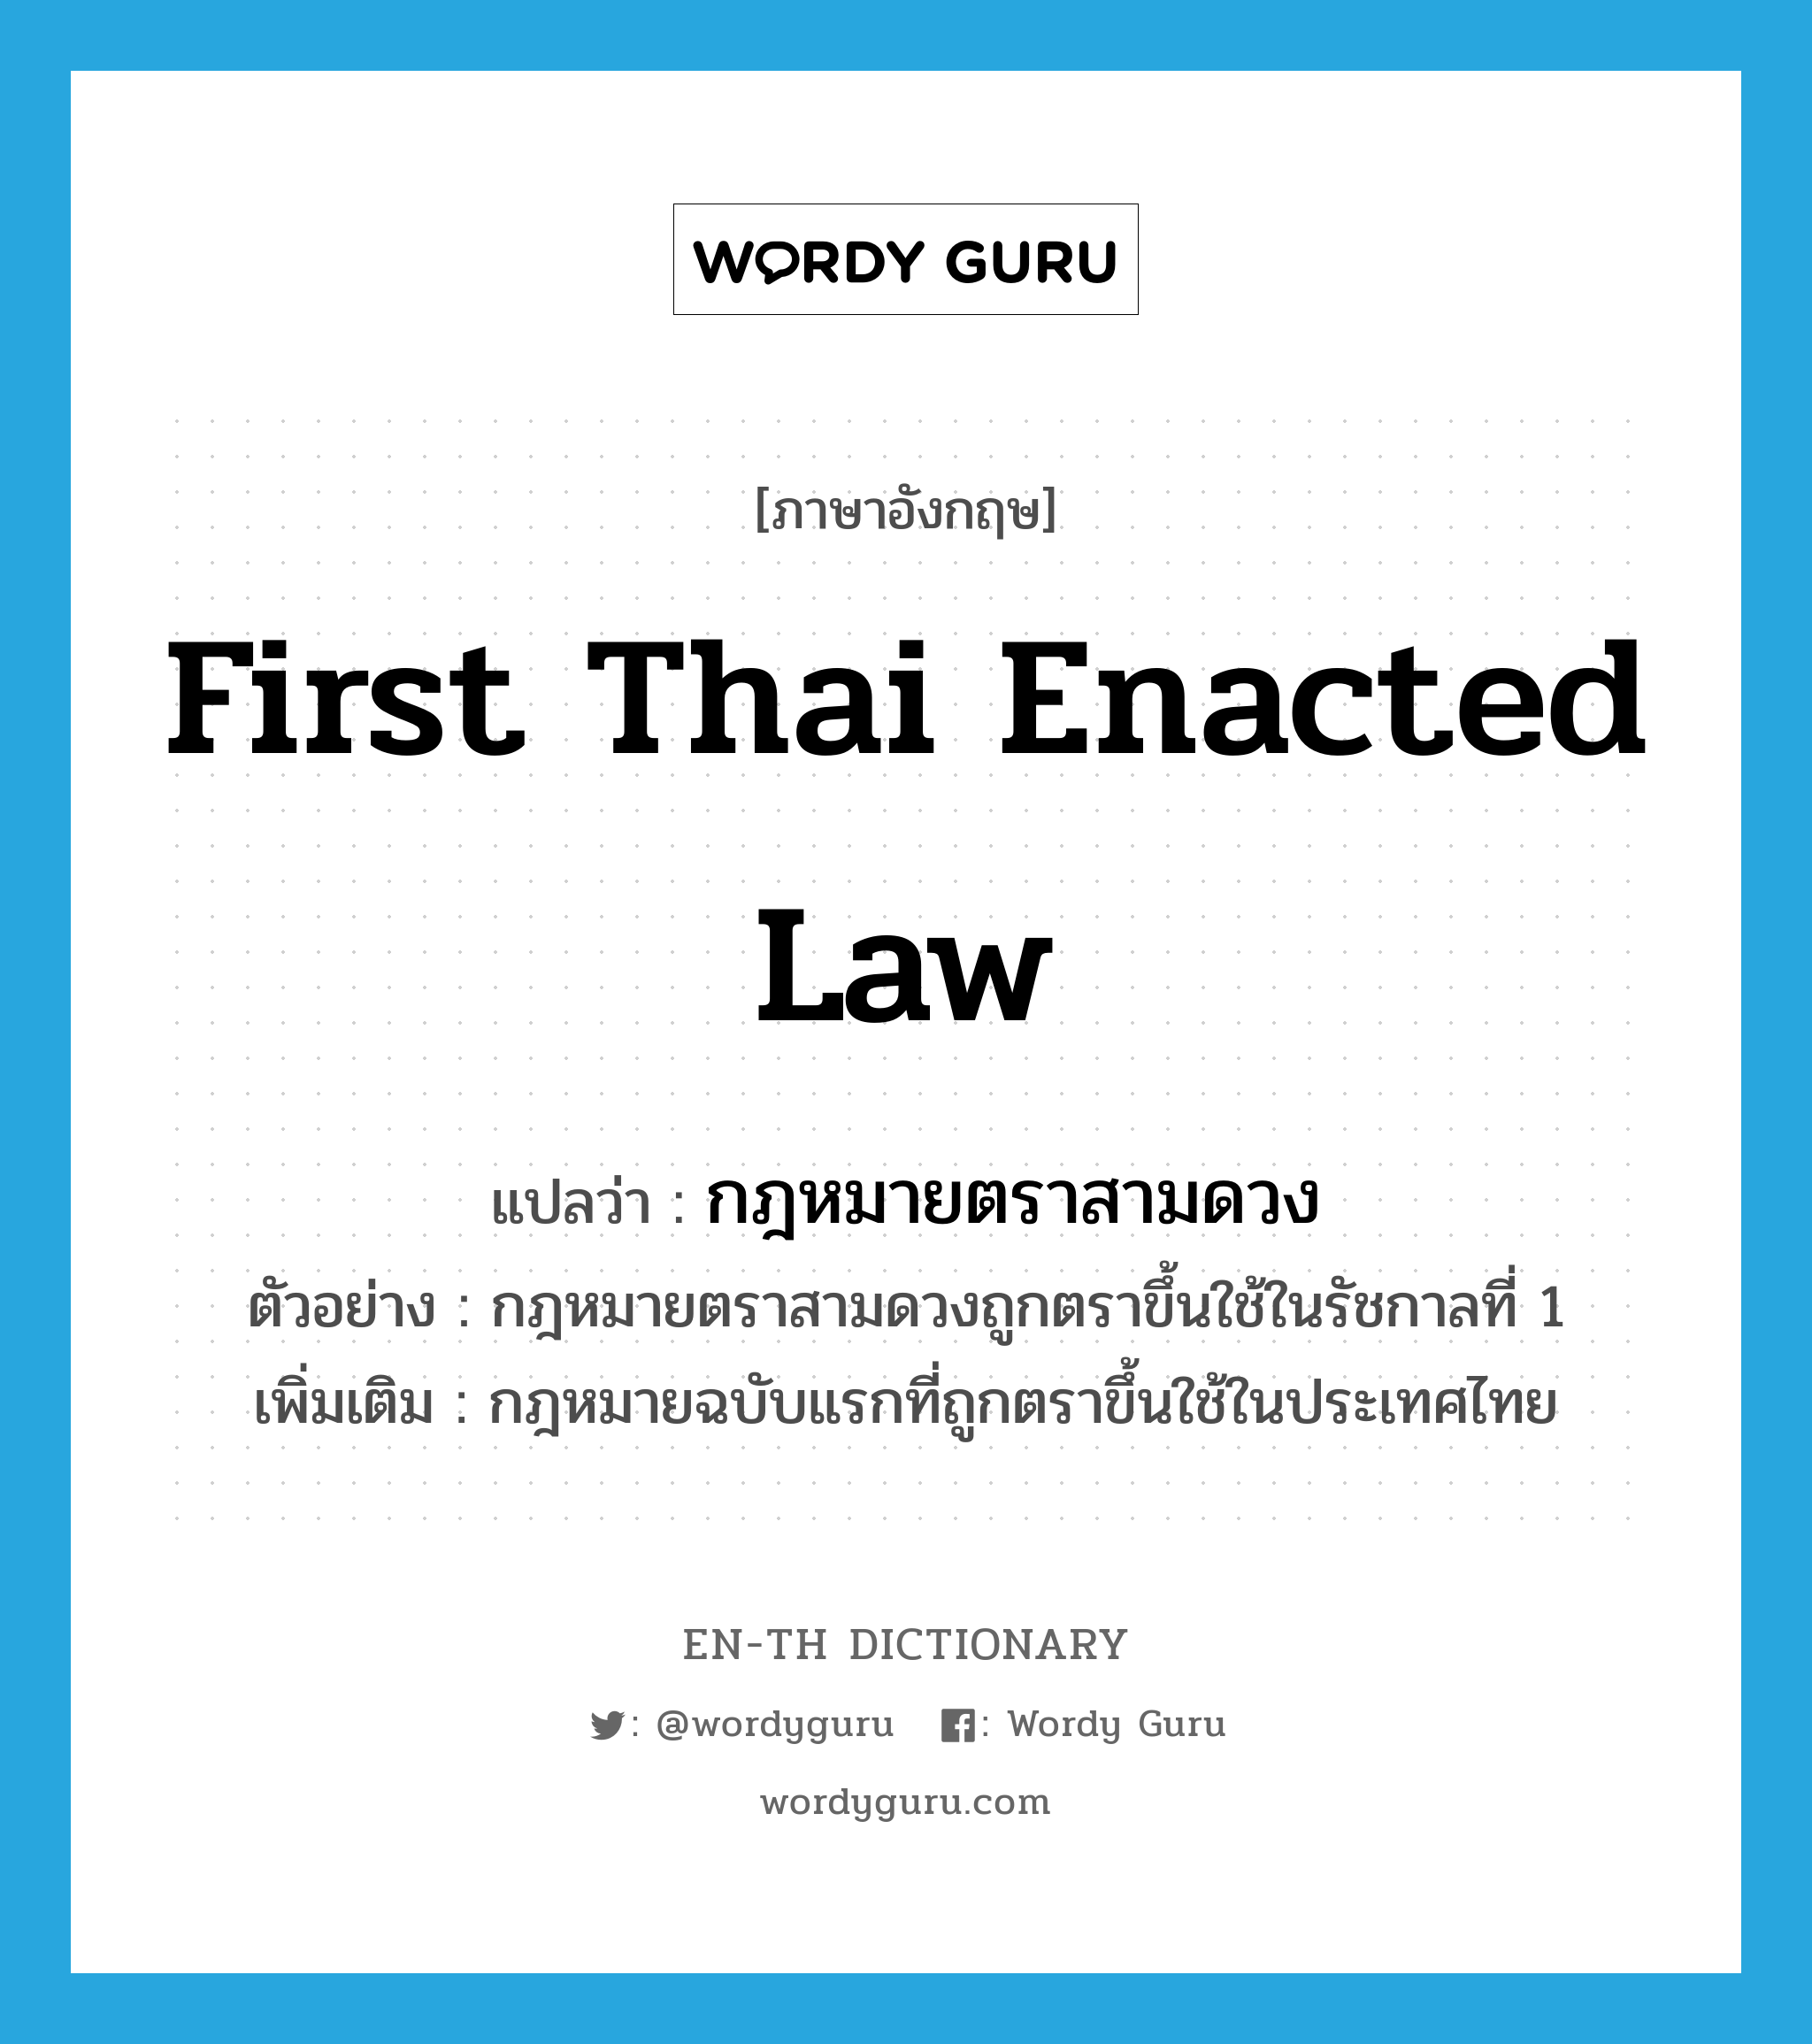 กฎหมายตราสามดวง ภาษาอังกฤษ?, คำศัพท์ภาษาอังกฤษ กฎหมายตราสามดวง แปลว่า first Thai enacted law ประเภท N ตัวอย่าง กฎหมายตราสามดวงถูกตราขึ้นใช้ในรัชกาลที่ 1 เพิ่มเติม กฎหมายฉบับแรกที่ถูกตราขึ้นใช้ในประเทศไทย หมวด N